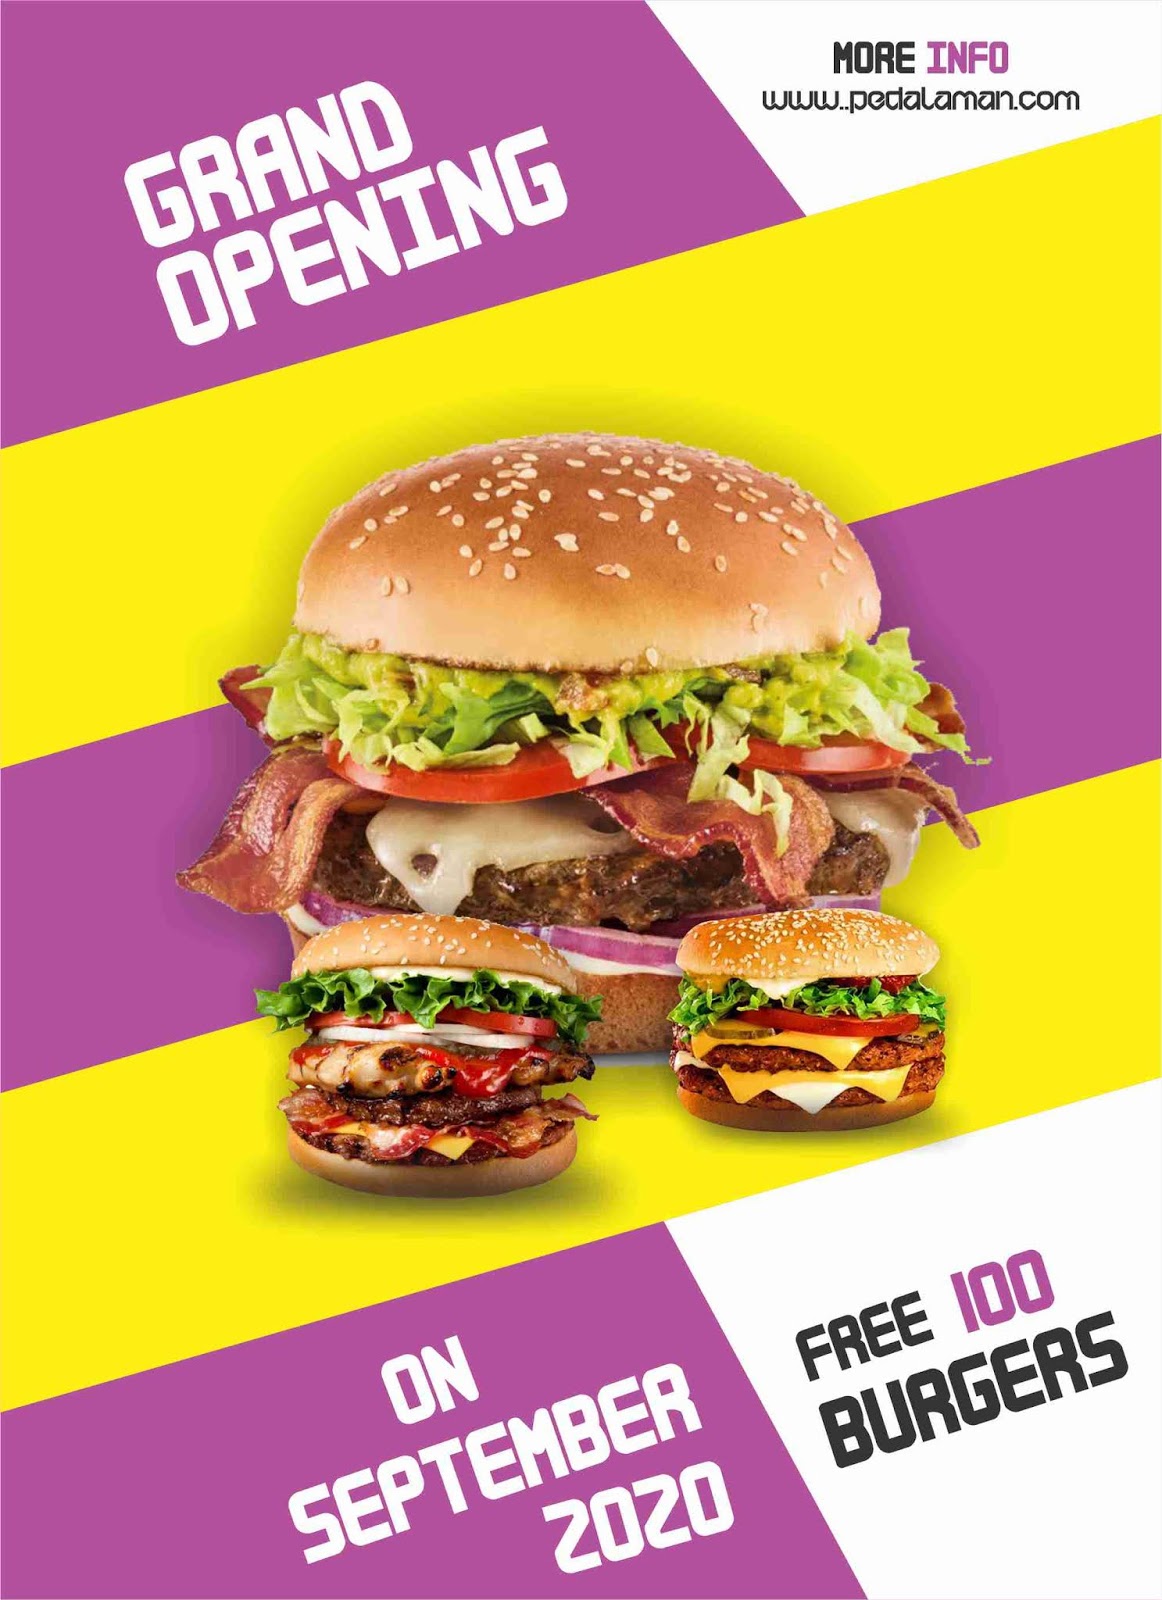 Membuat Brosur Burger Promosi Dengan Corel Draw Tutorial Coreldraw Desain Grafis Pedalaman Com